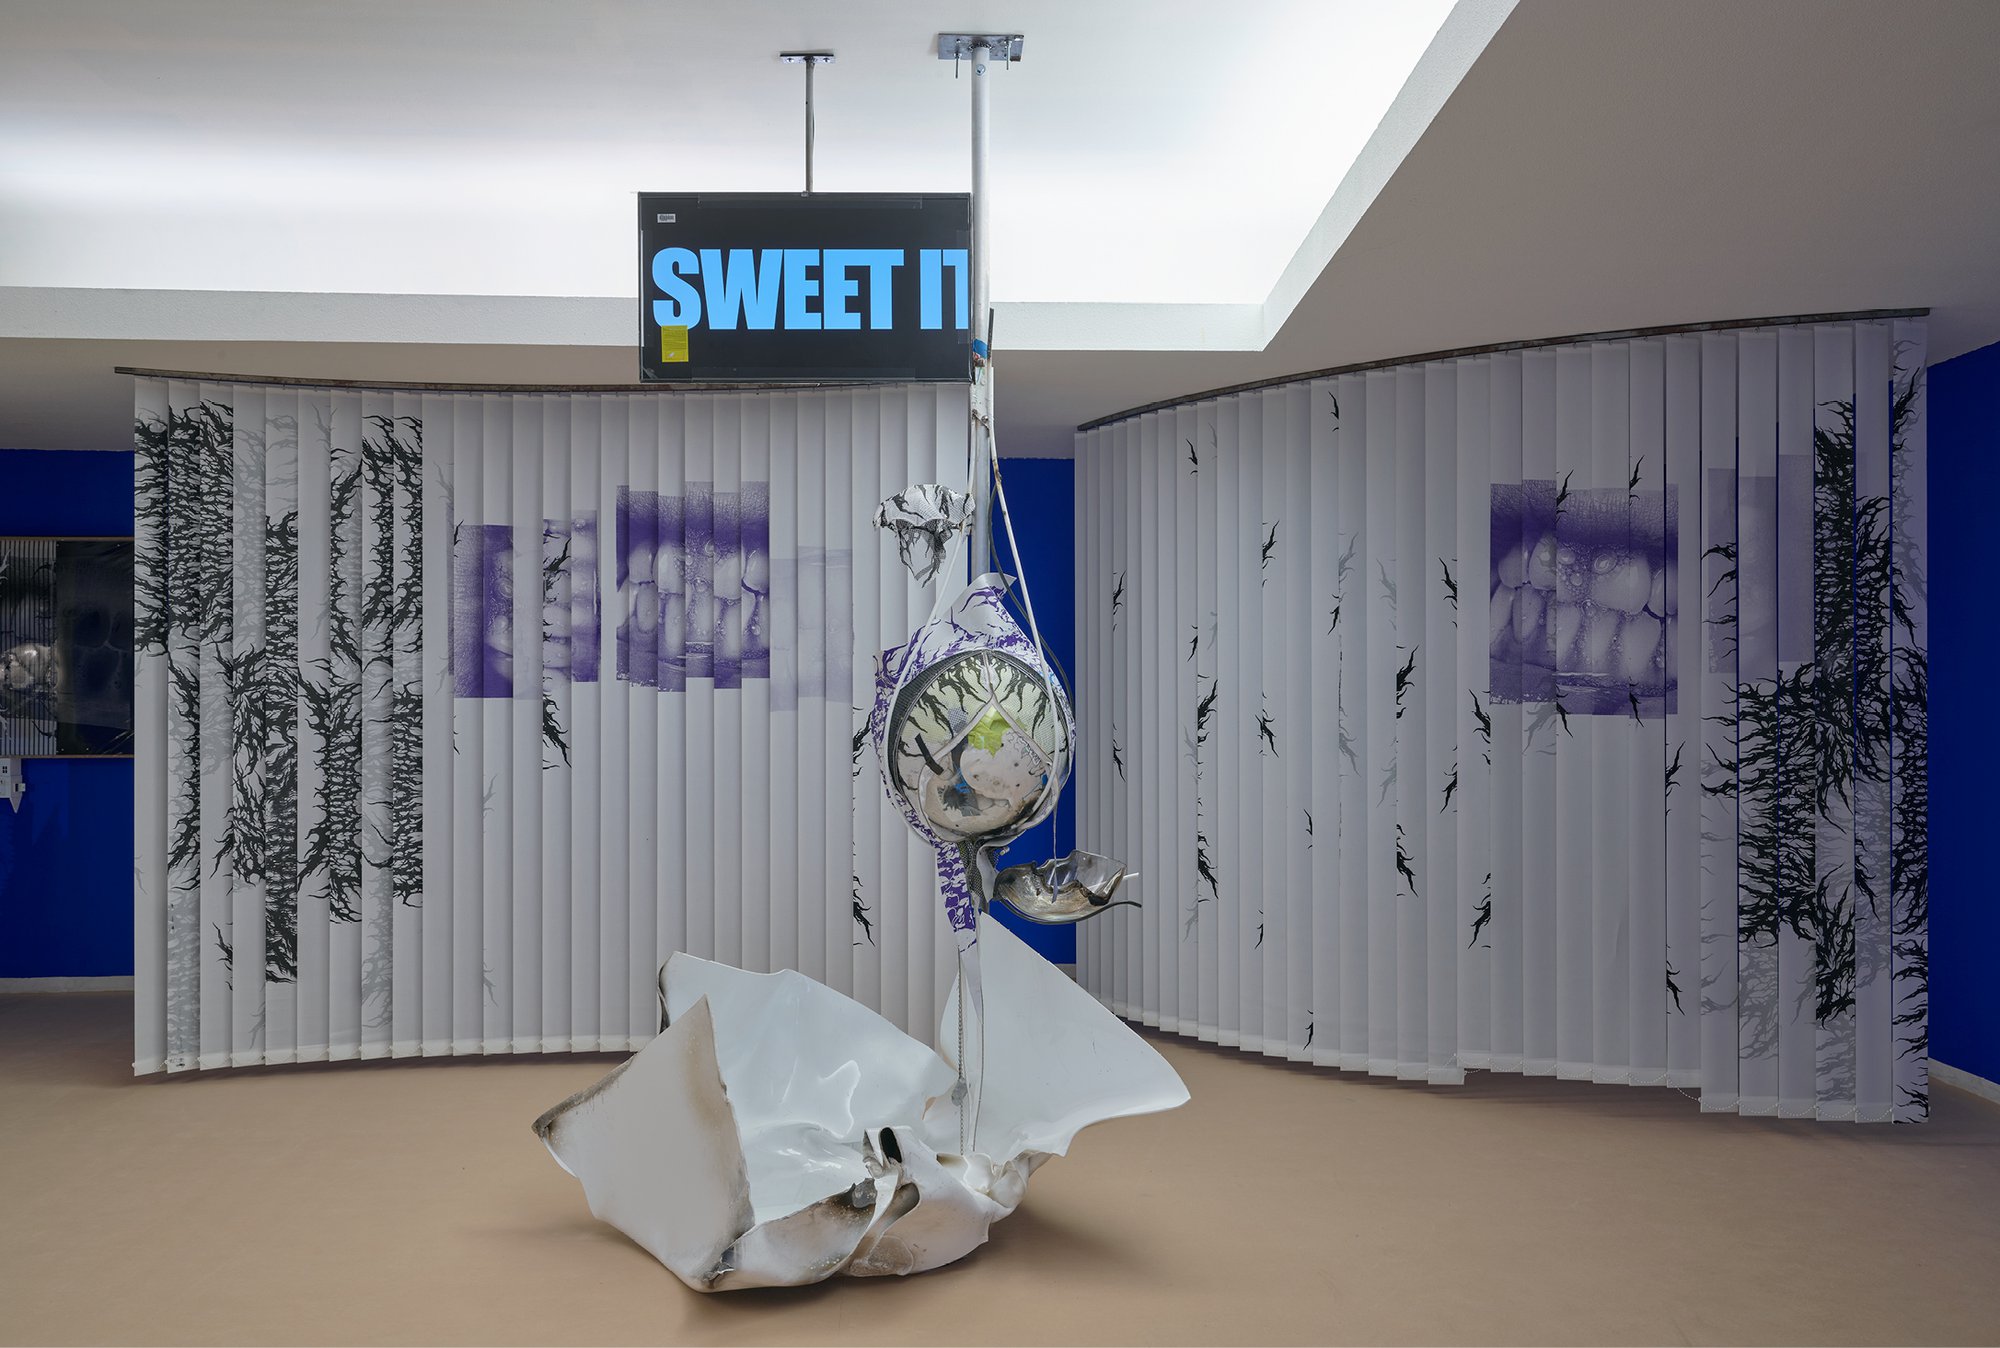 Installation view, David Douard, O’Ti’Lulabies, Serralves Museum, Porto, 2022